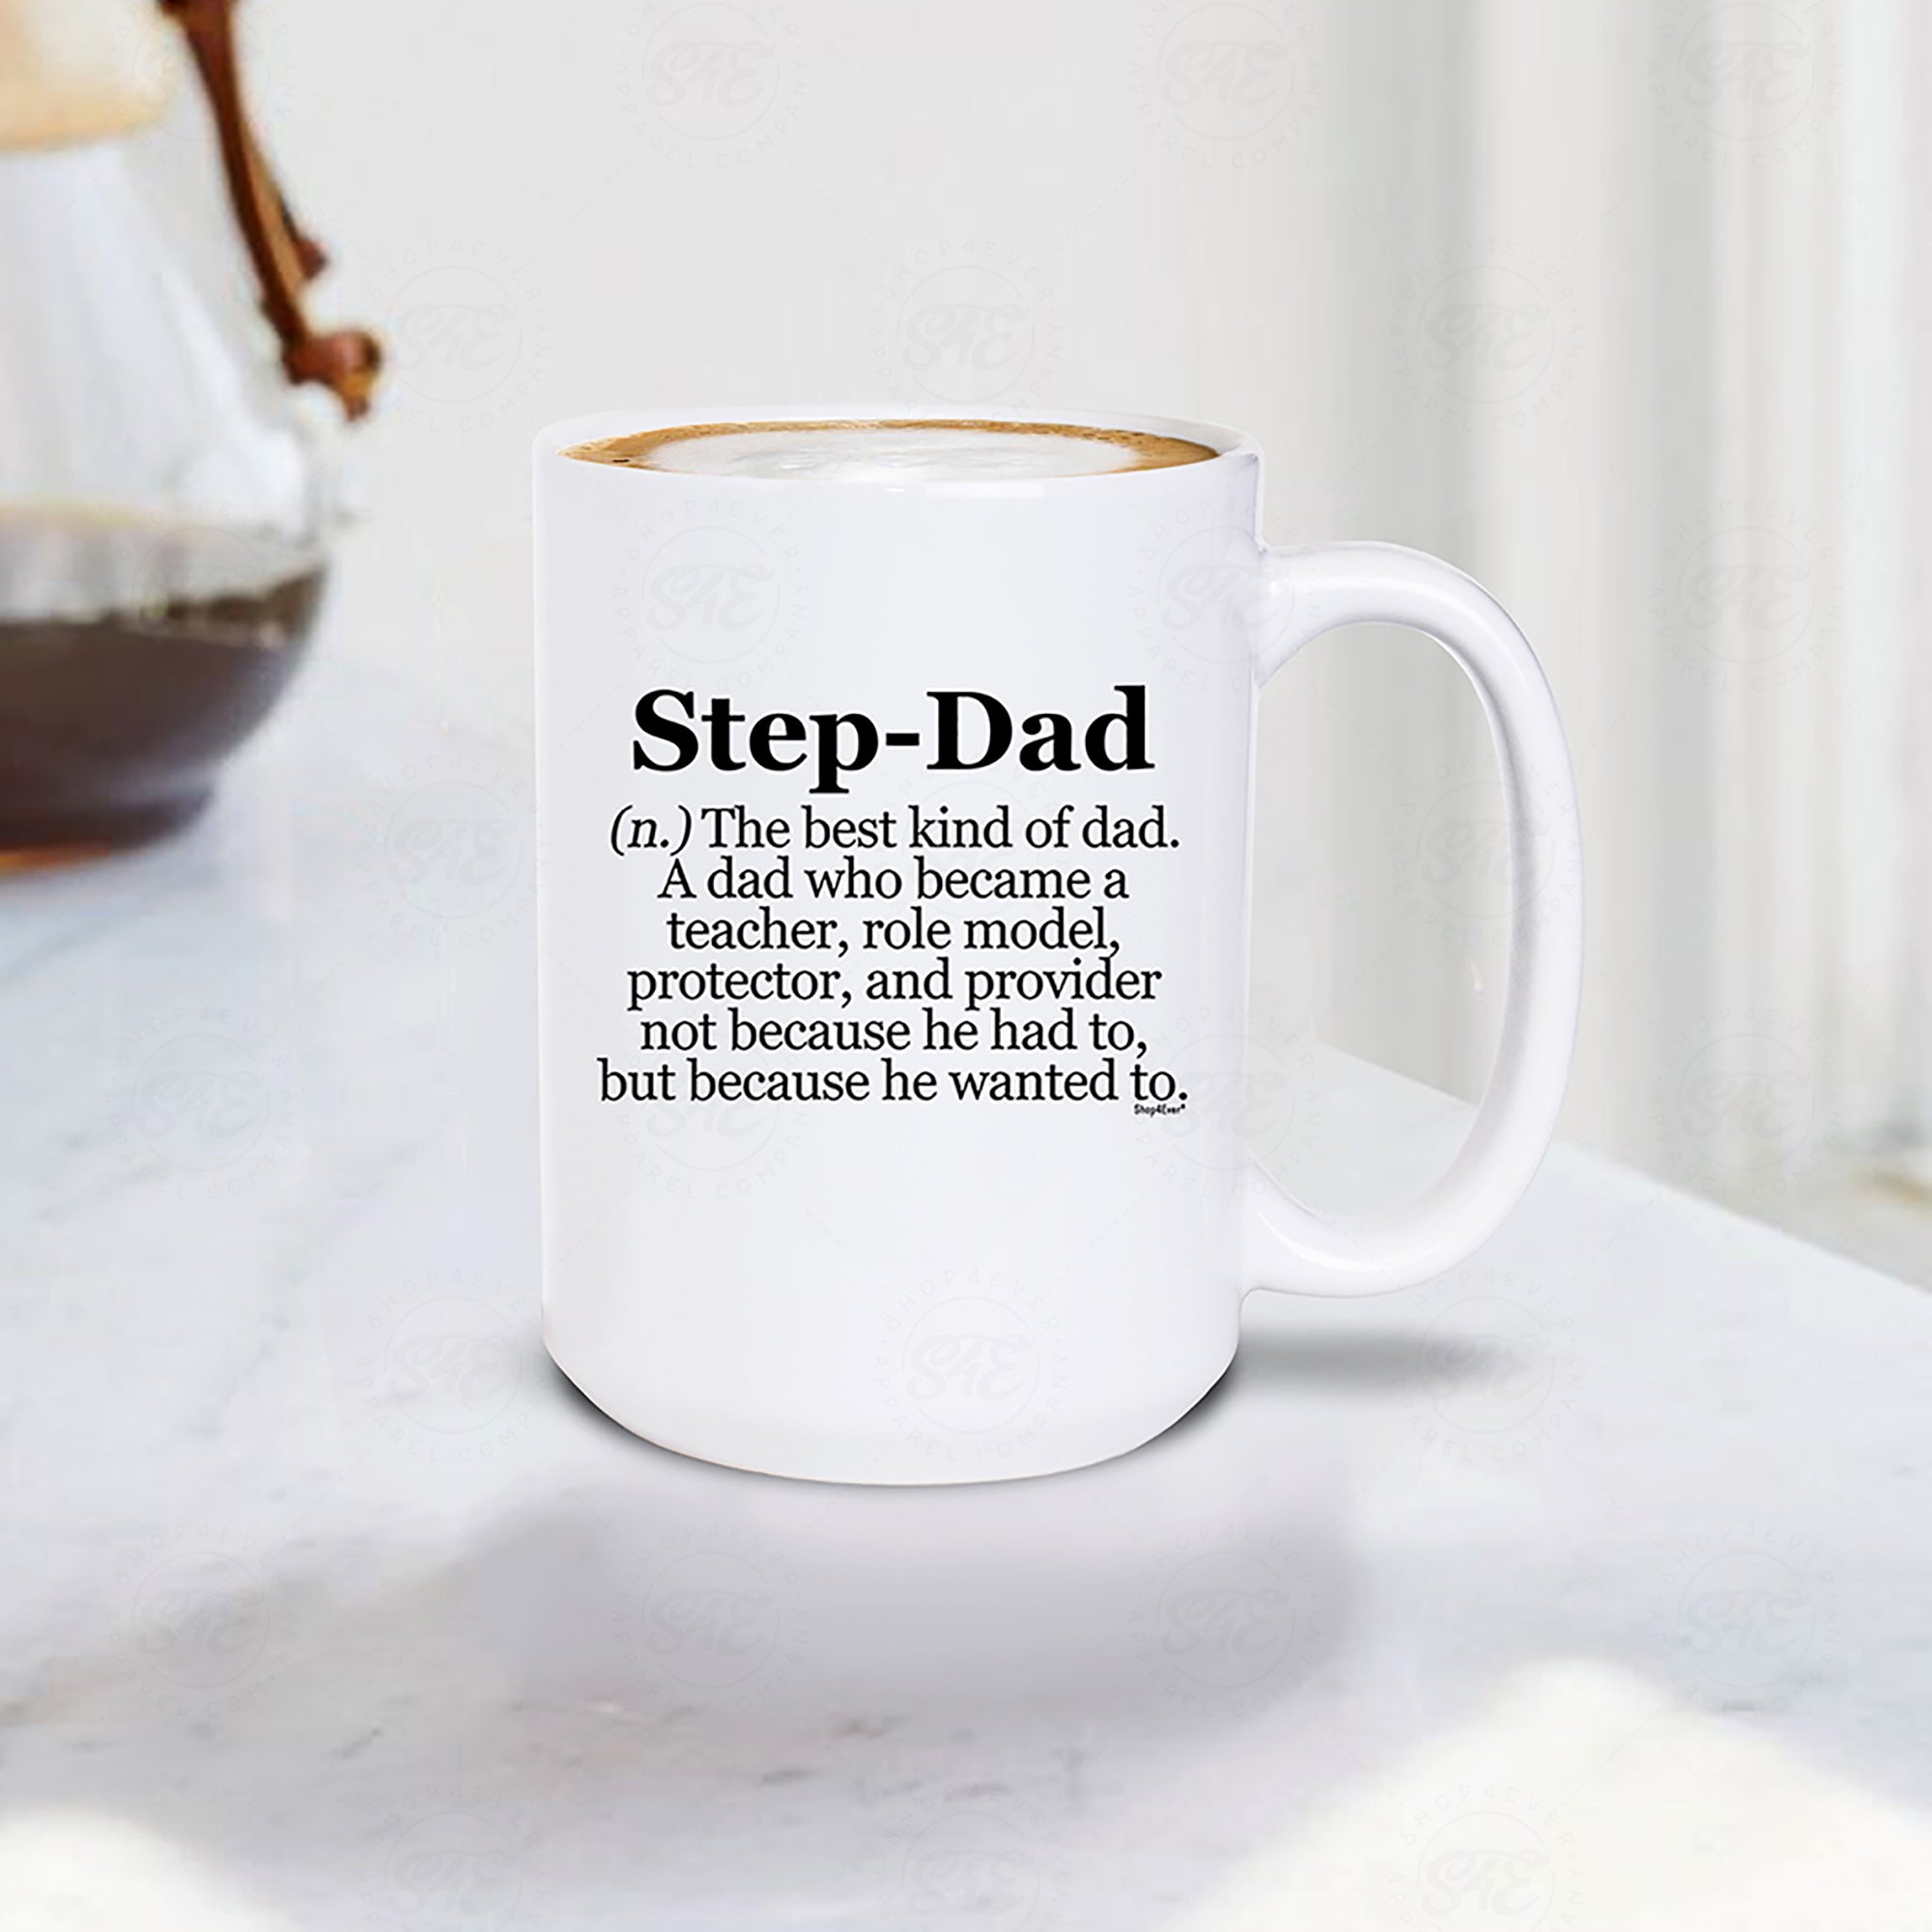 Step-Dad Definition Ceramic Coffee Mug 15 oz